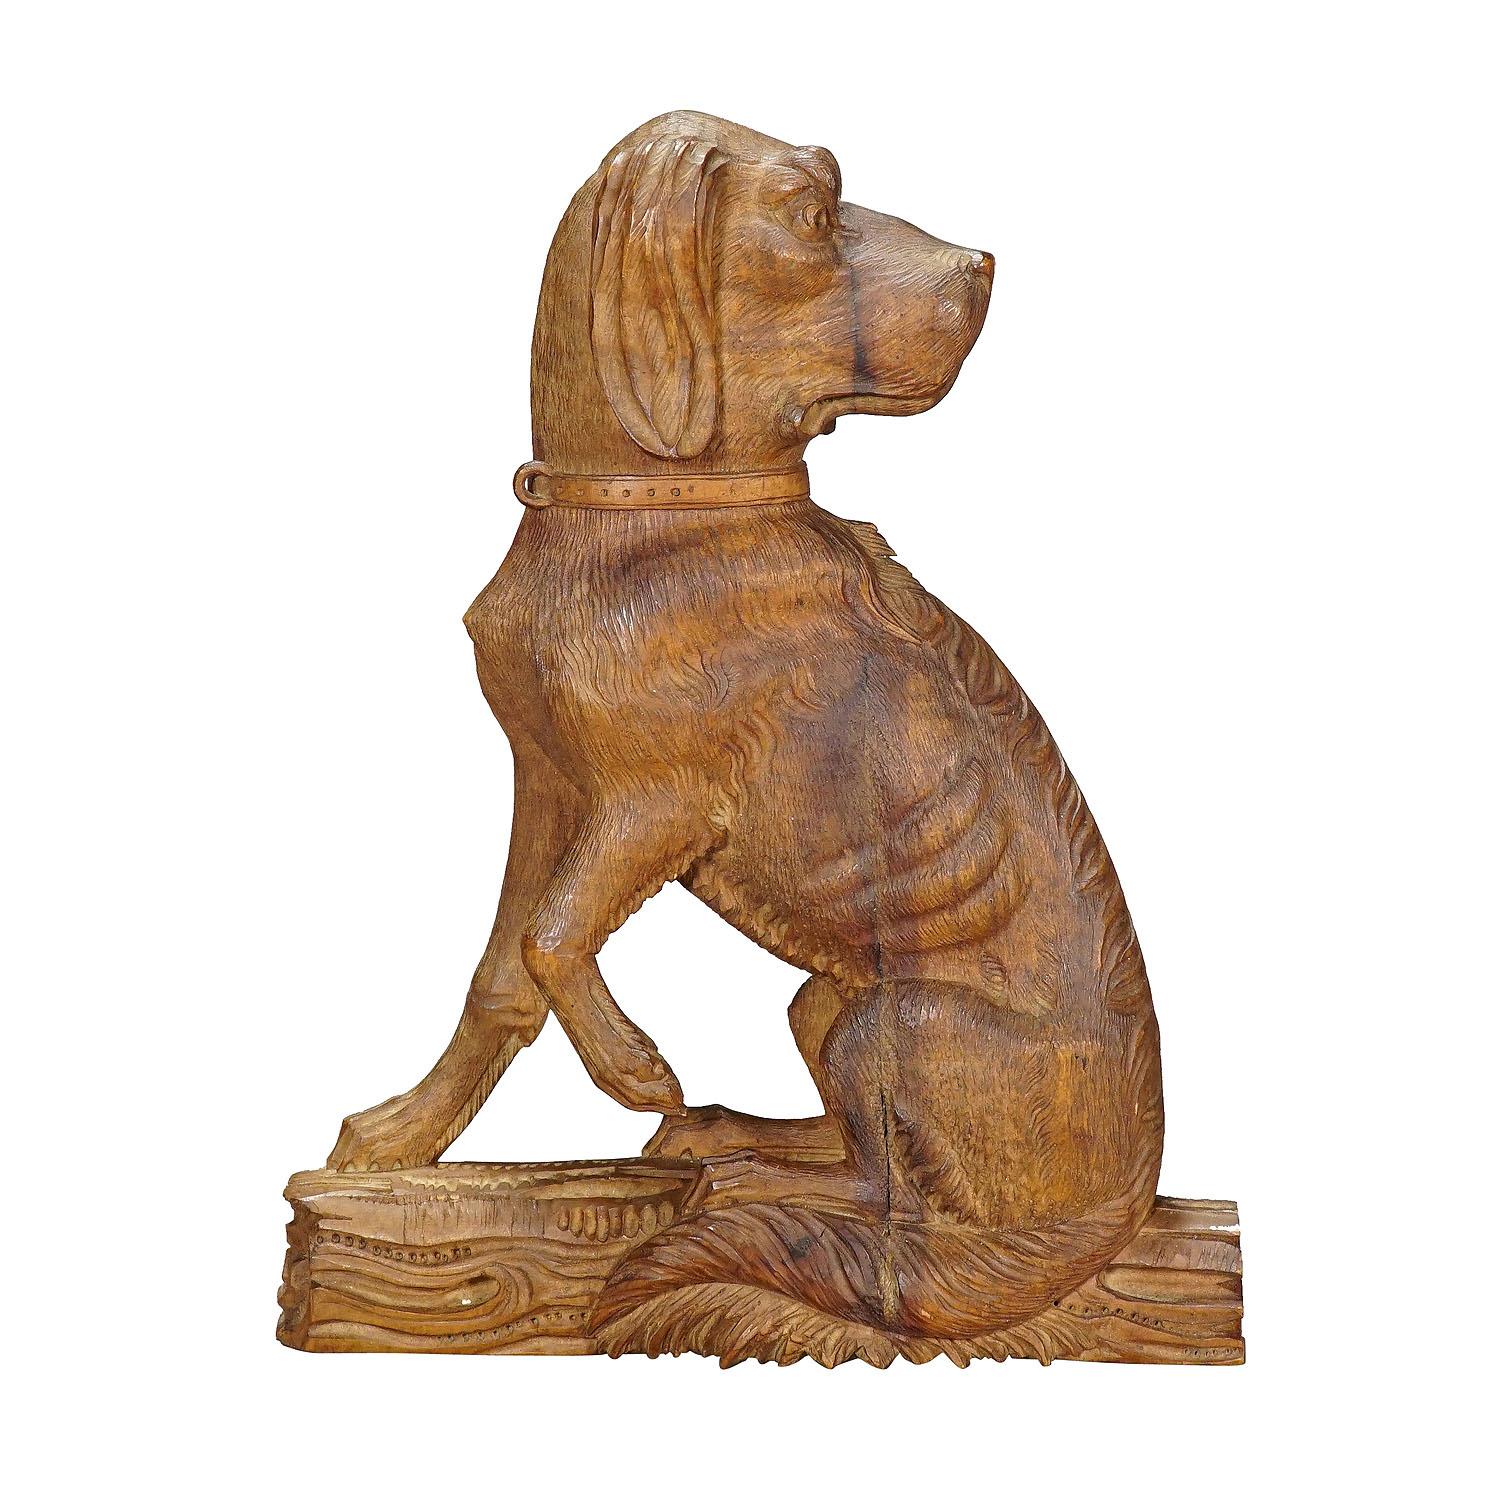 Fein geschnitzte Statue eines Hirschhundes, um 1920

Eine aus Holz geschnitzte Statue eines Hirschhundes. Es ist als Halbrelief aus einem Stück Nussholz geschnitzt. Hergestellt in Brienz, Schweiz, um 1920.

Die Tradition der Holzschnitzerei in